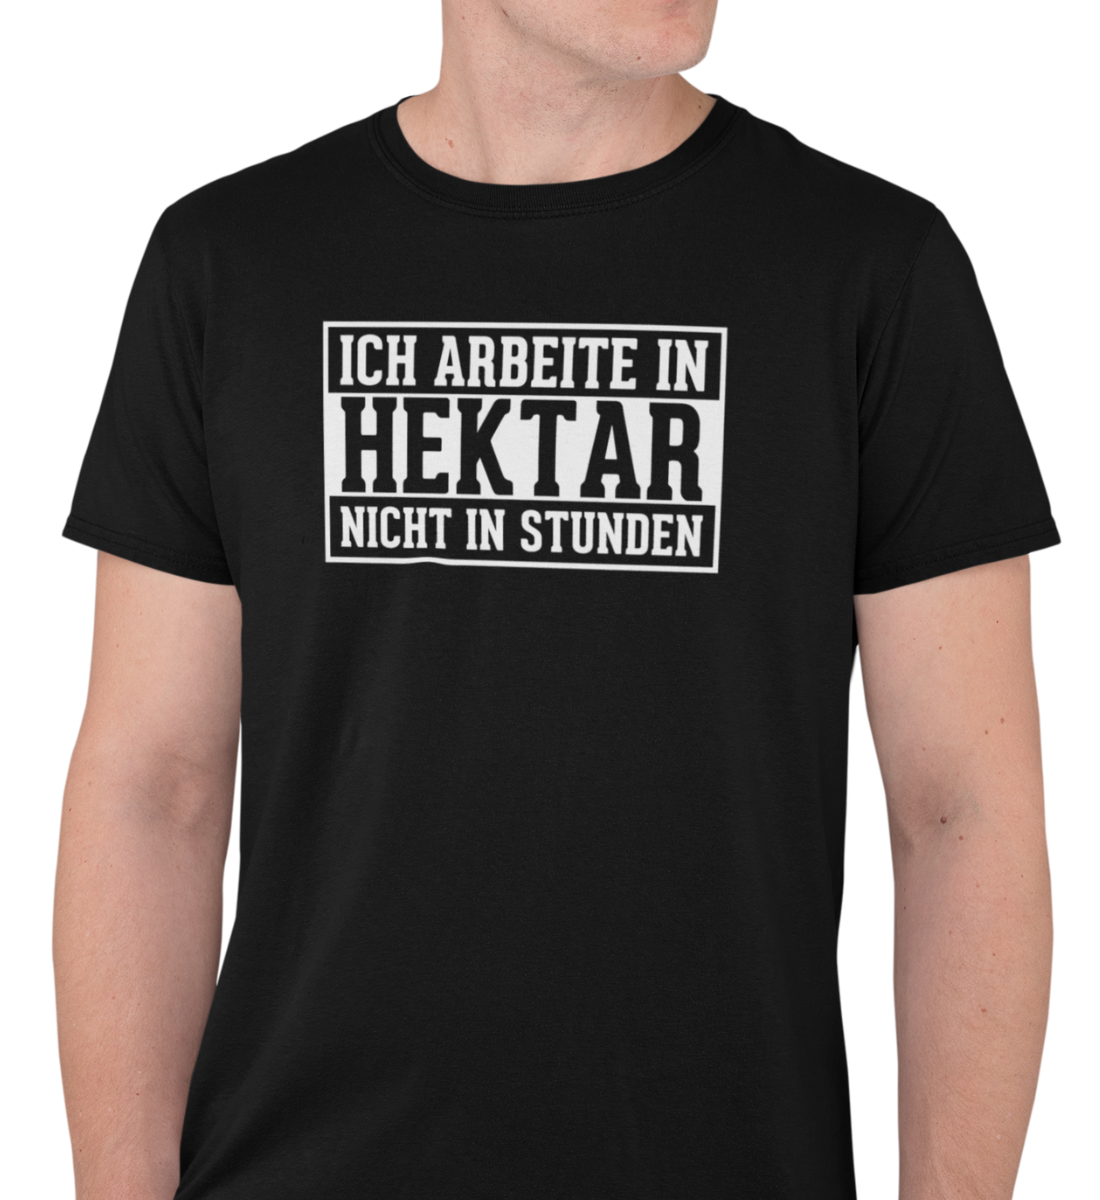 "ICH ARBEITE IN HEKTAR" HERREN BIO T-SHIRT